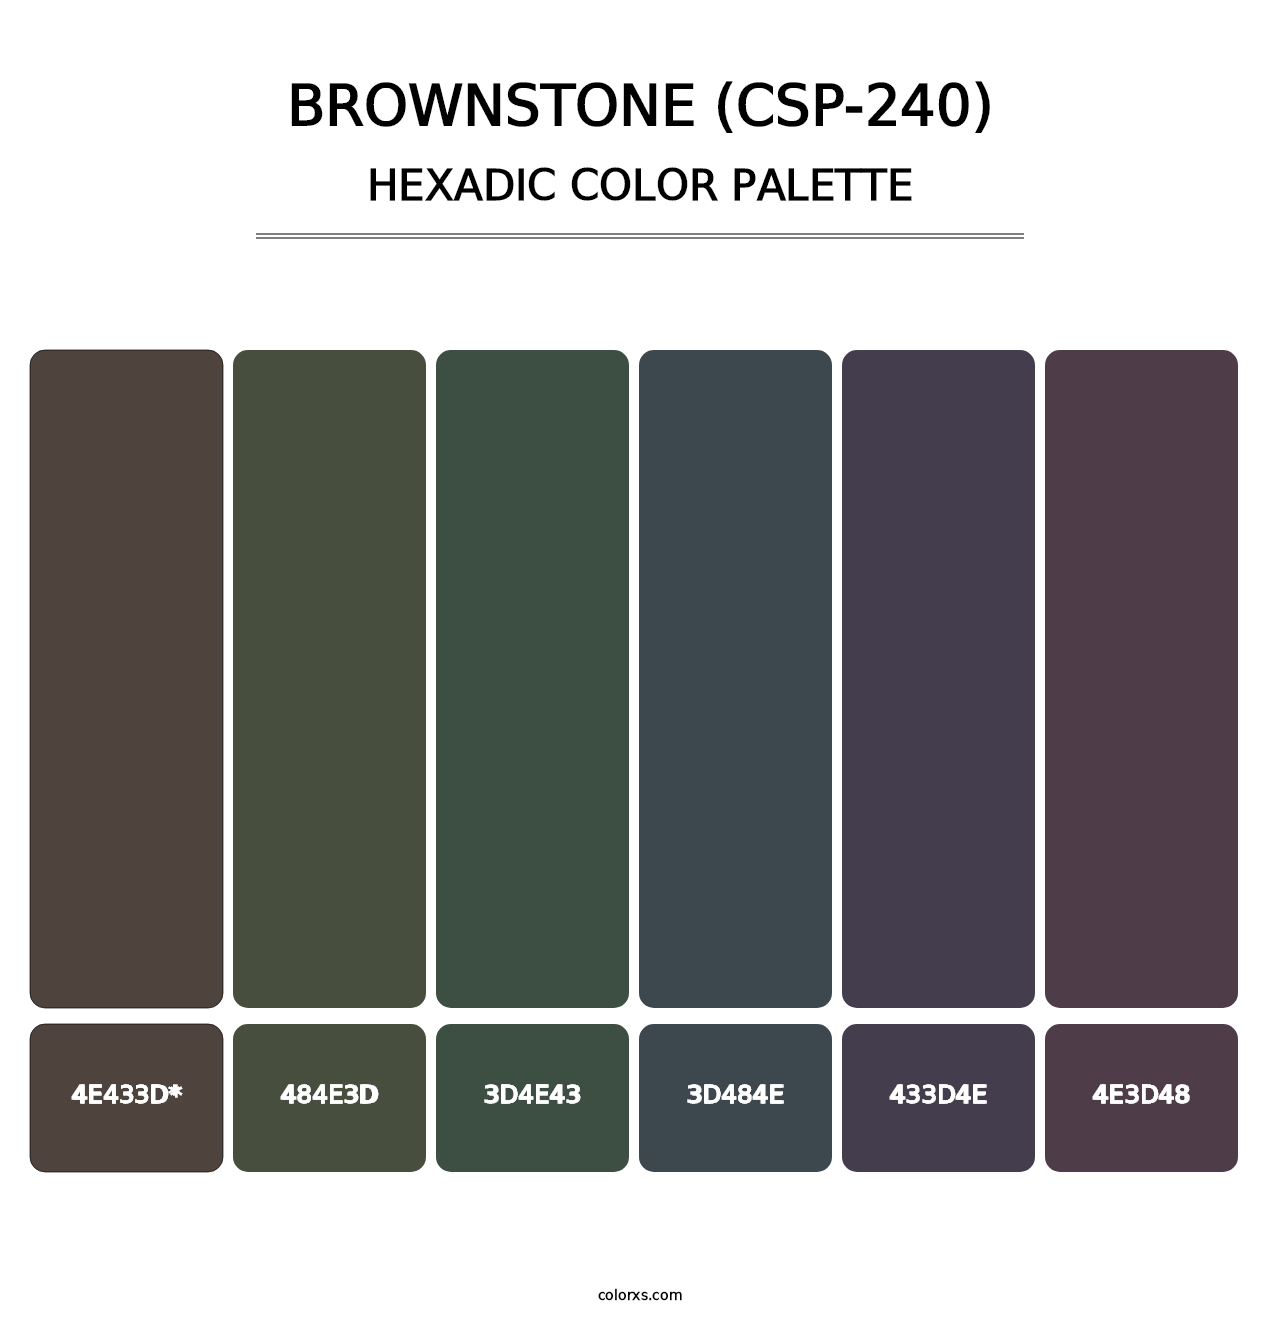 Brownstone (CSP-240) - Hexadic Color Palette